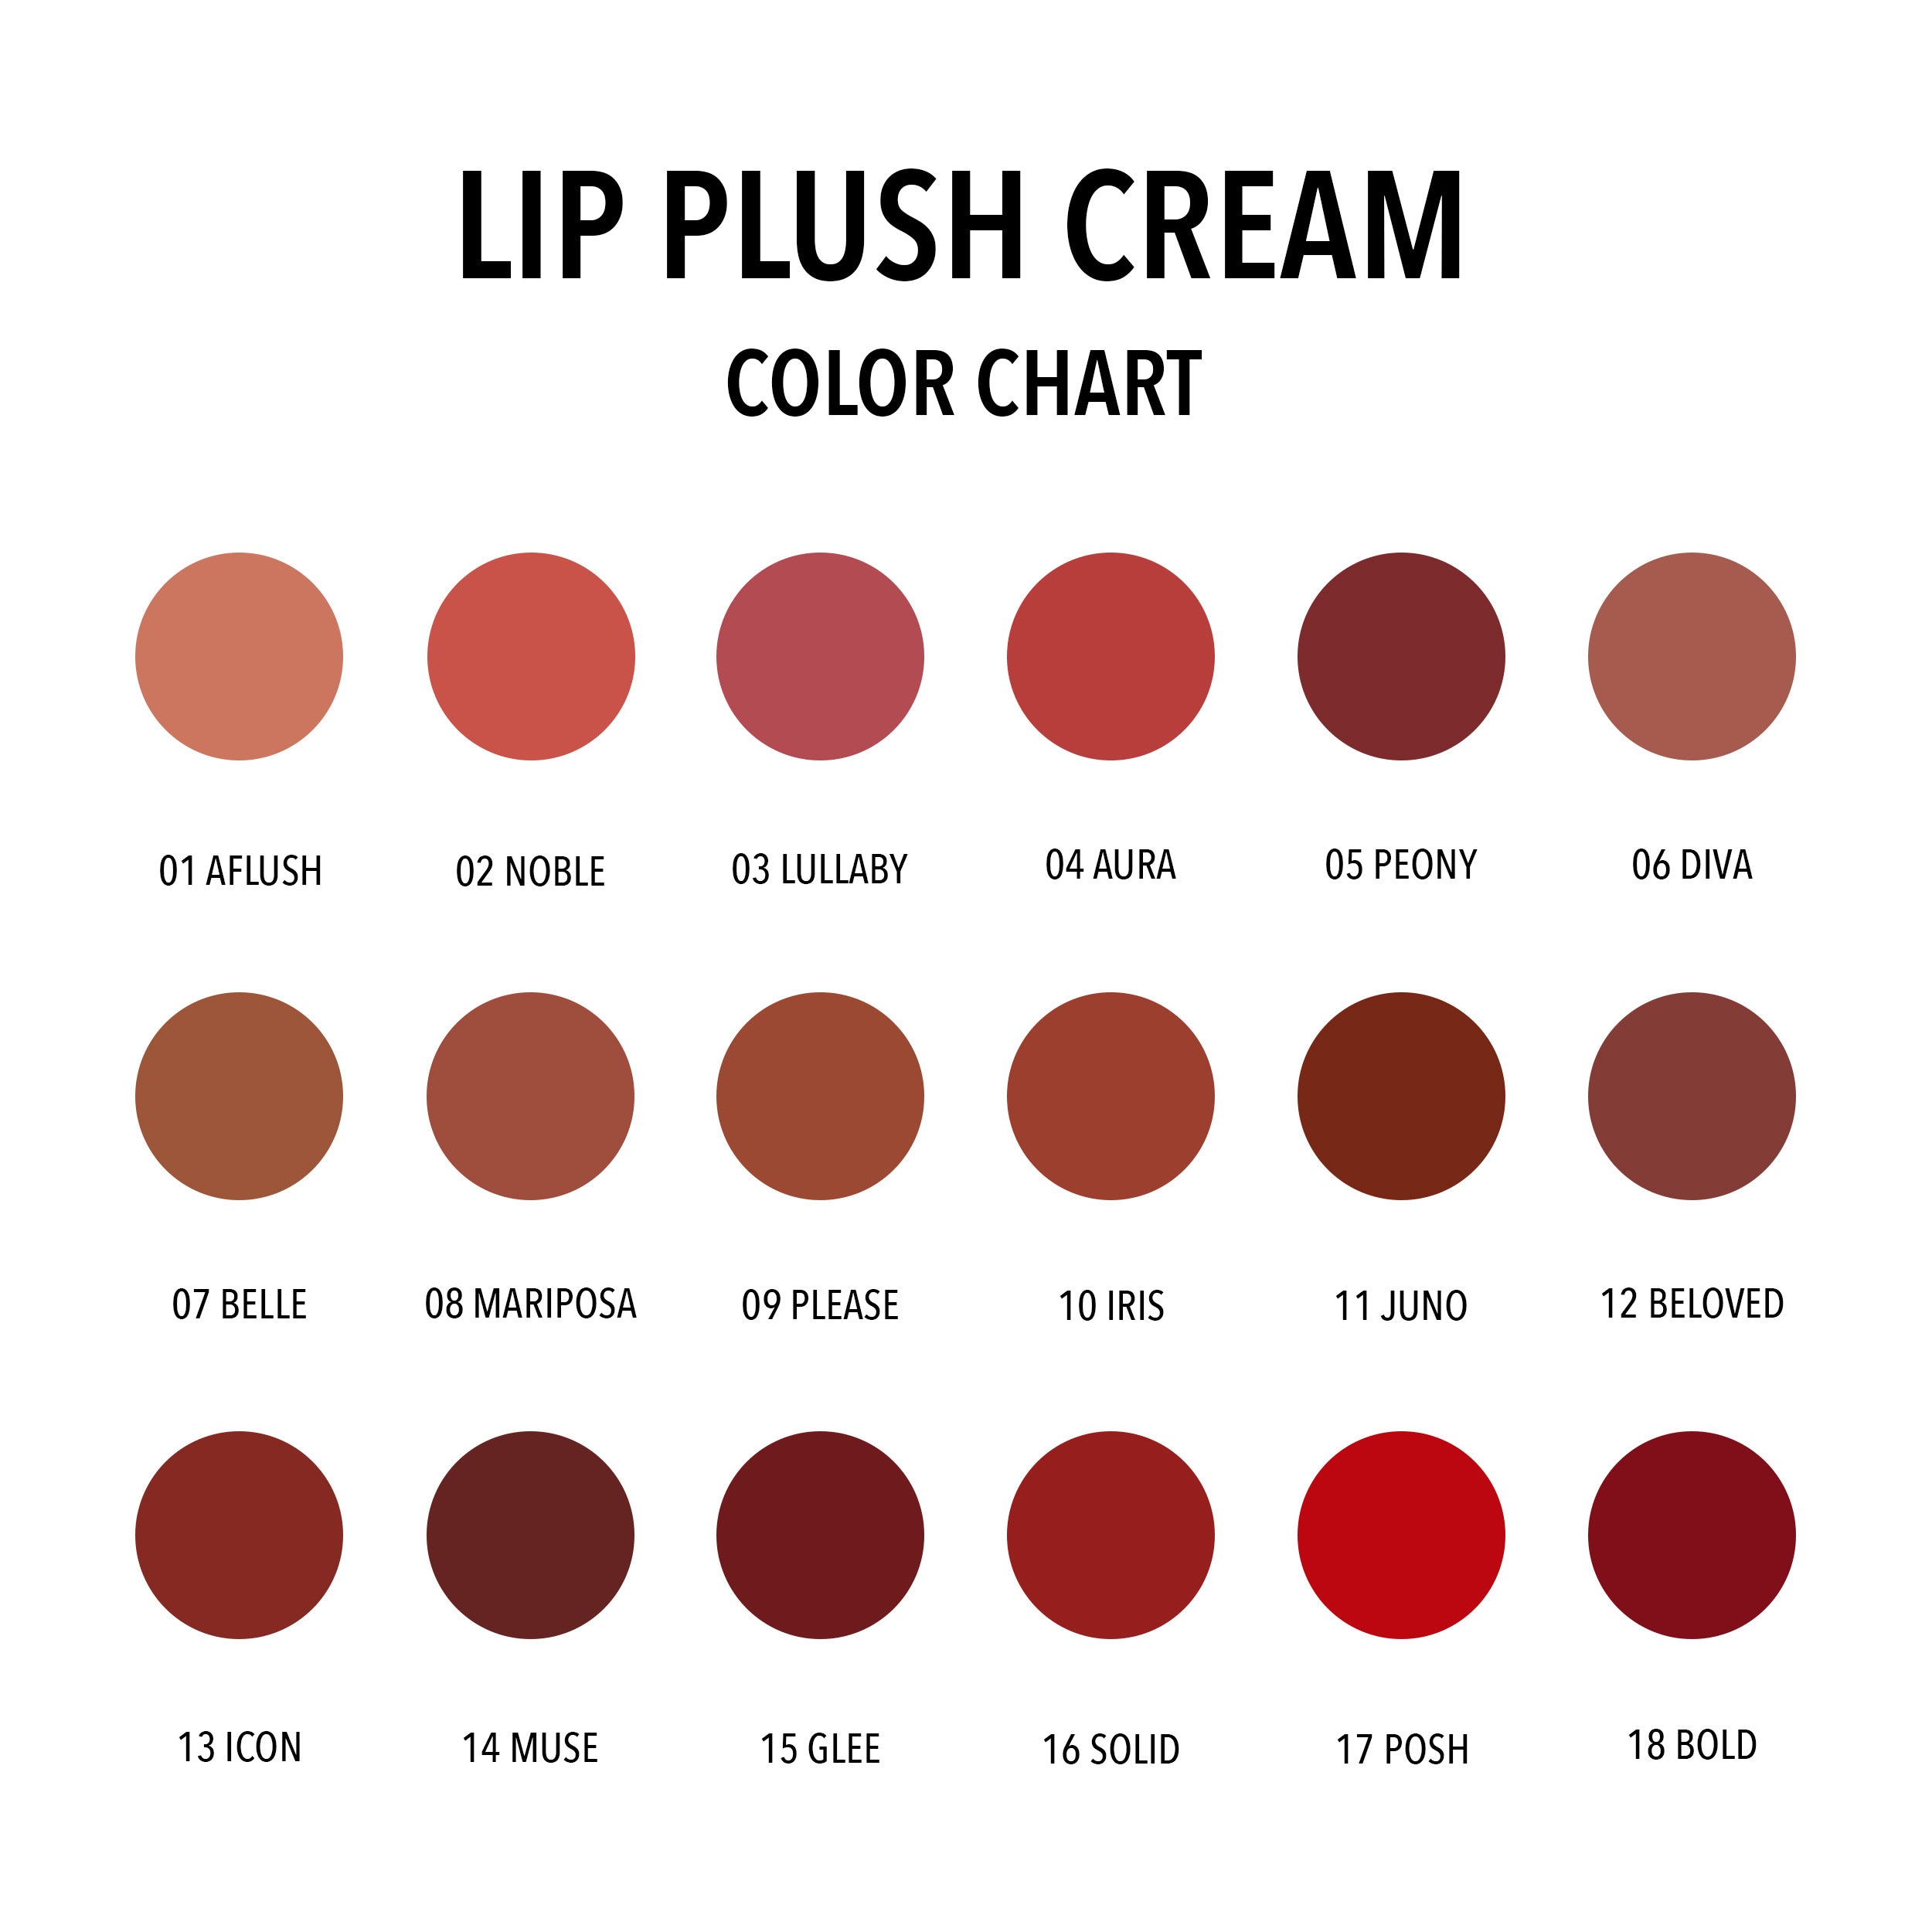 Lip Plush Cream (006, Diva)